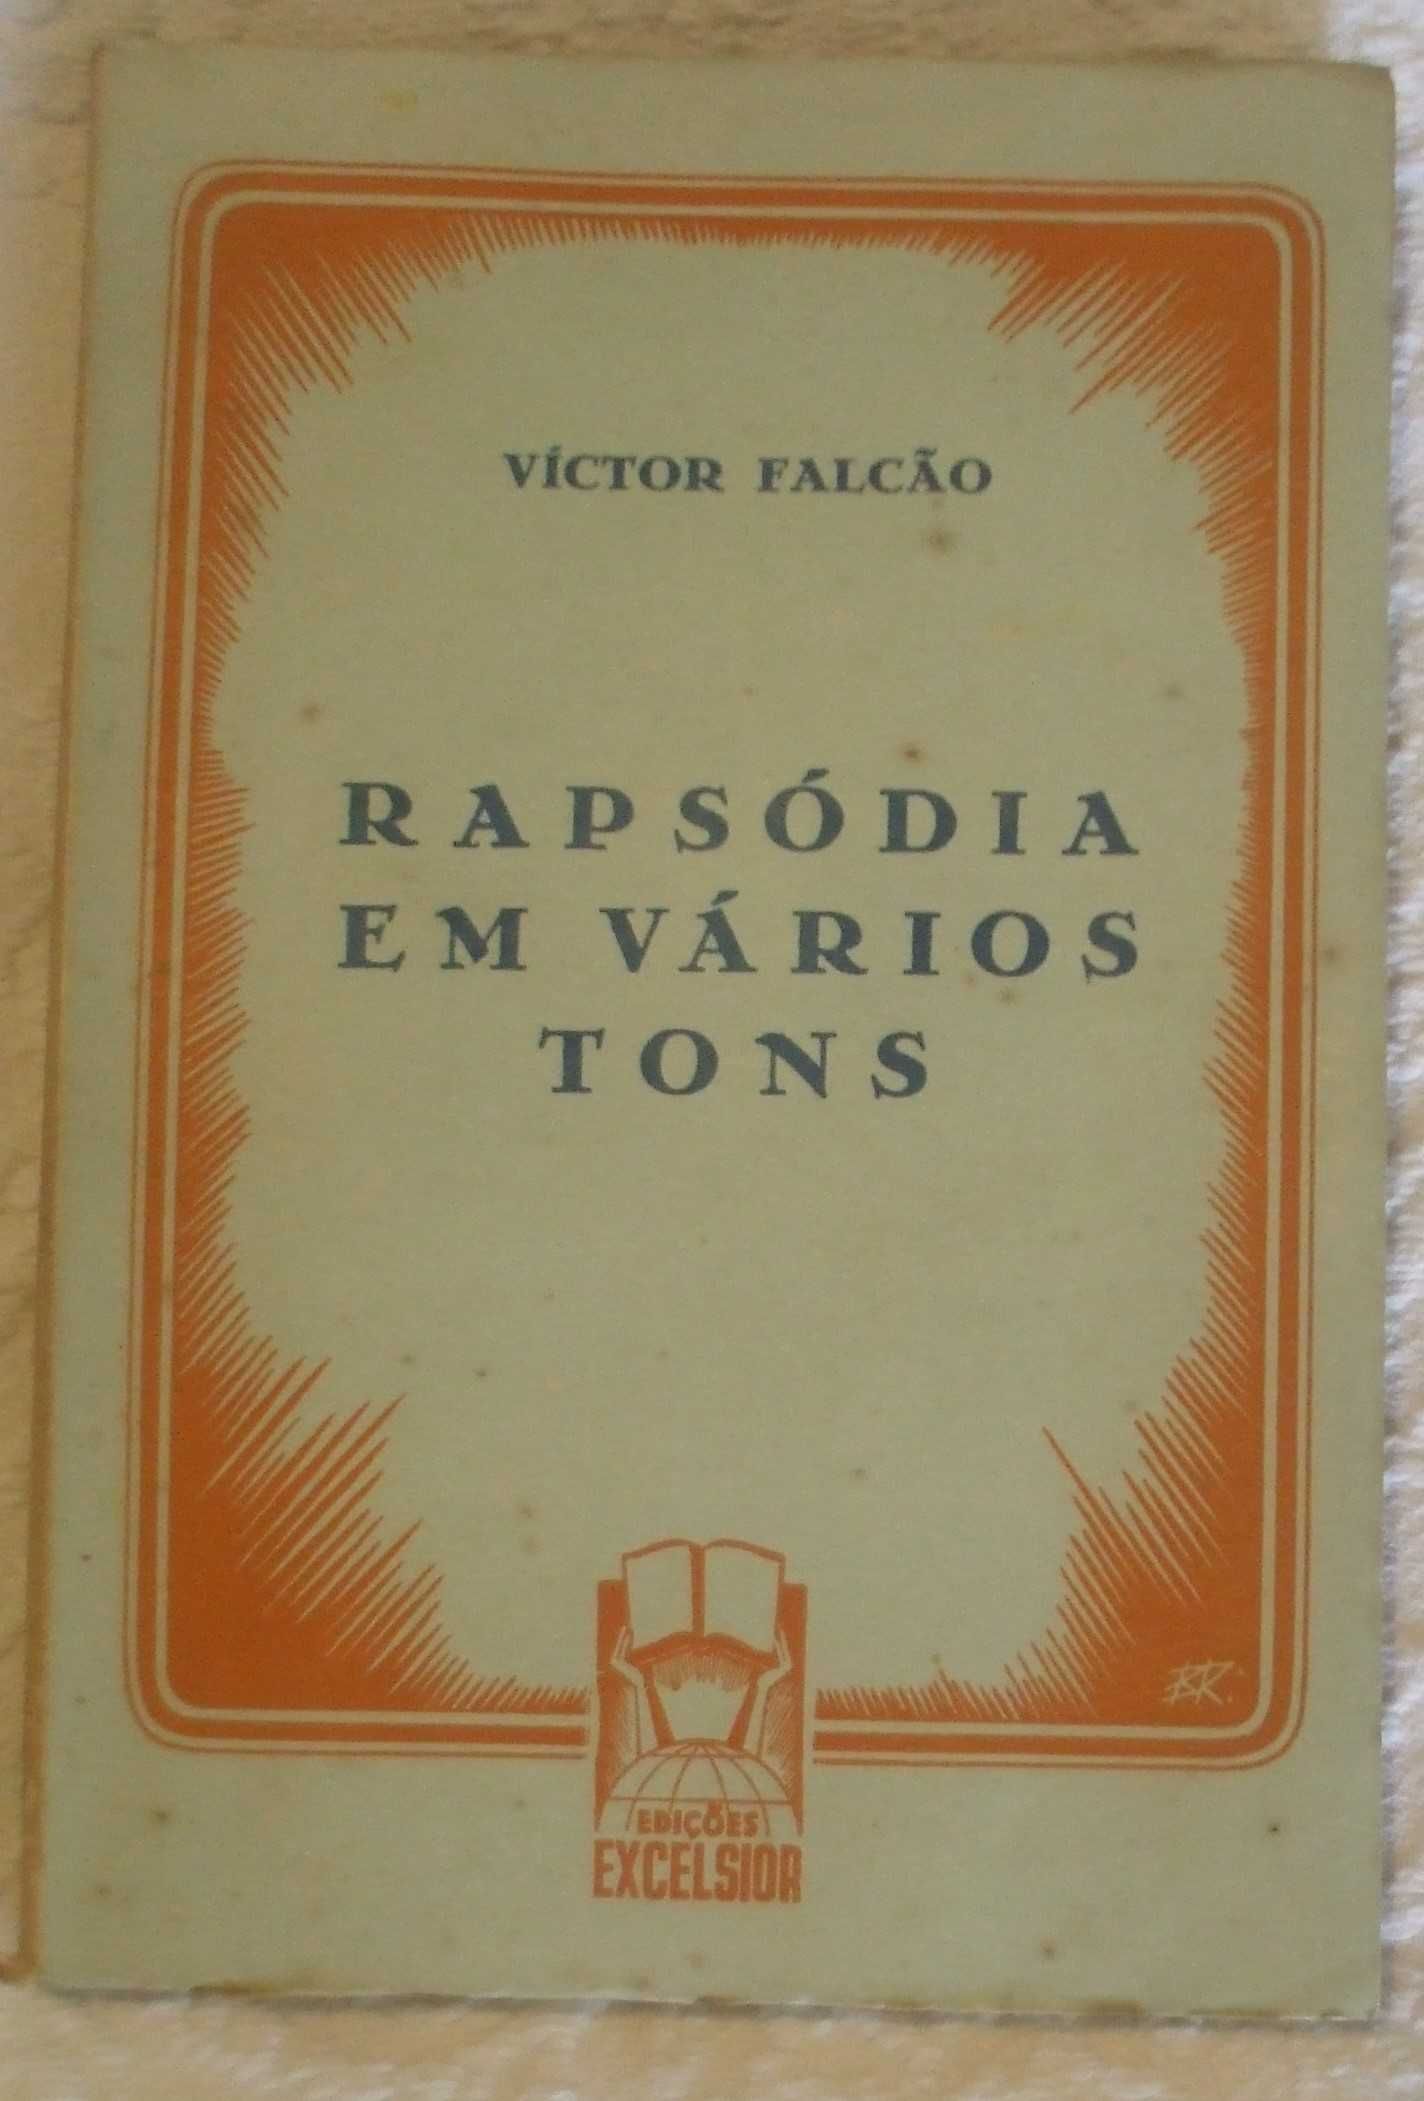 Rapsódia em vários tons, Victor Falcão